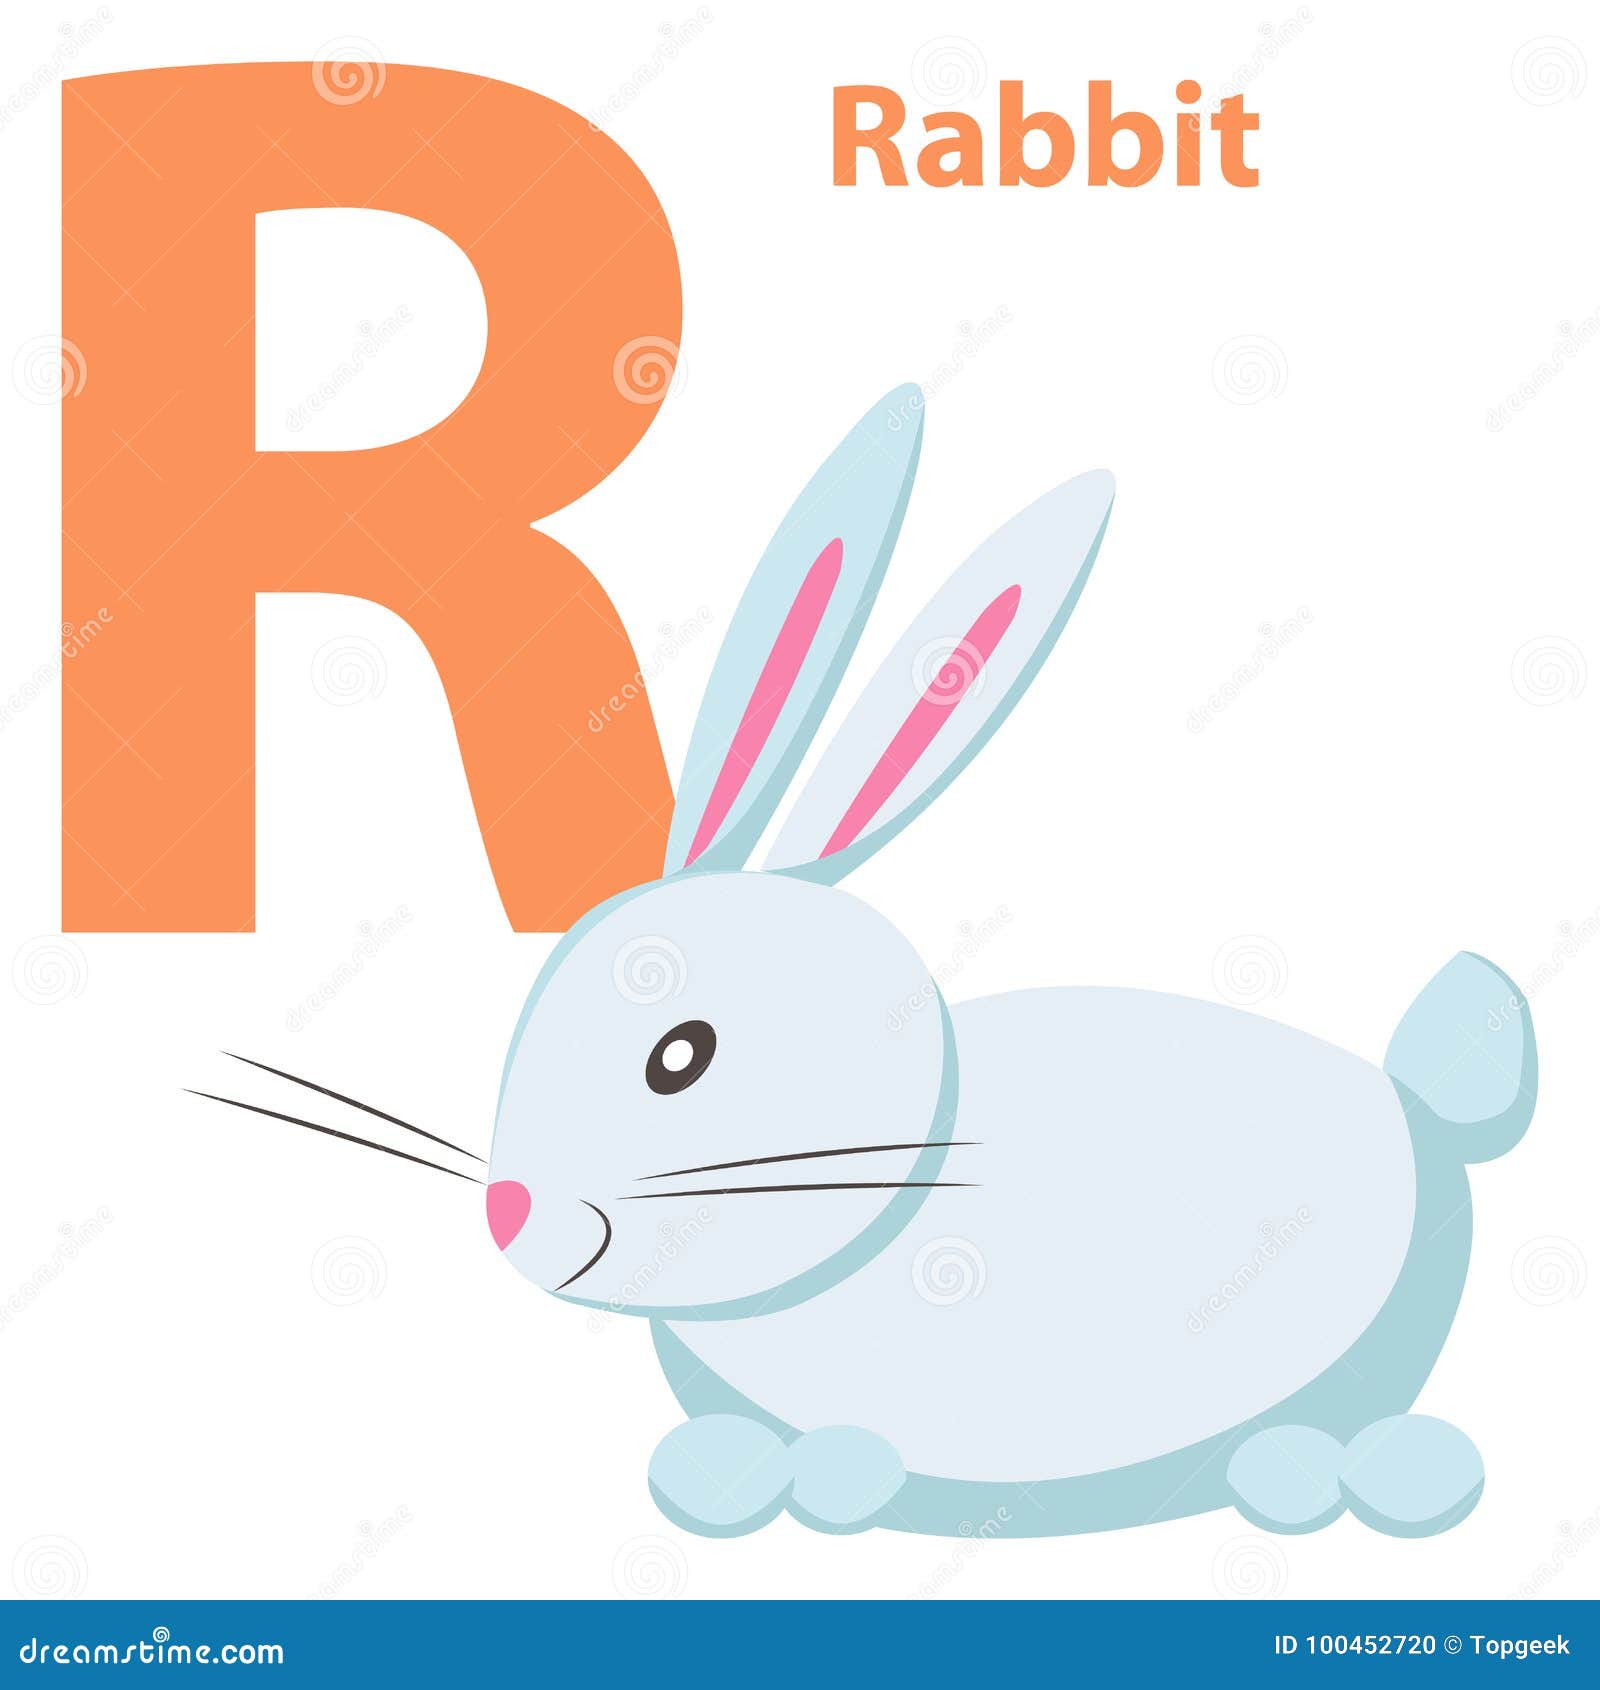 Как будет на английский ваш зайчик. Letter r кролик. Буква к кролик. Английские буквы Rabbit. Слово кролик на английском.